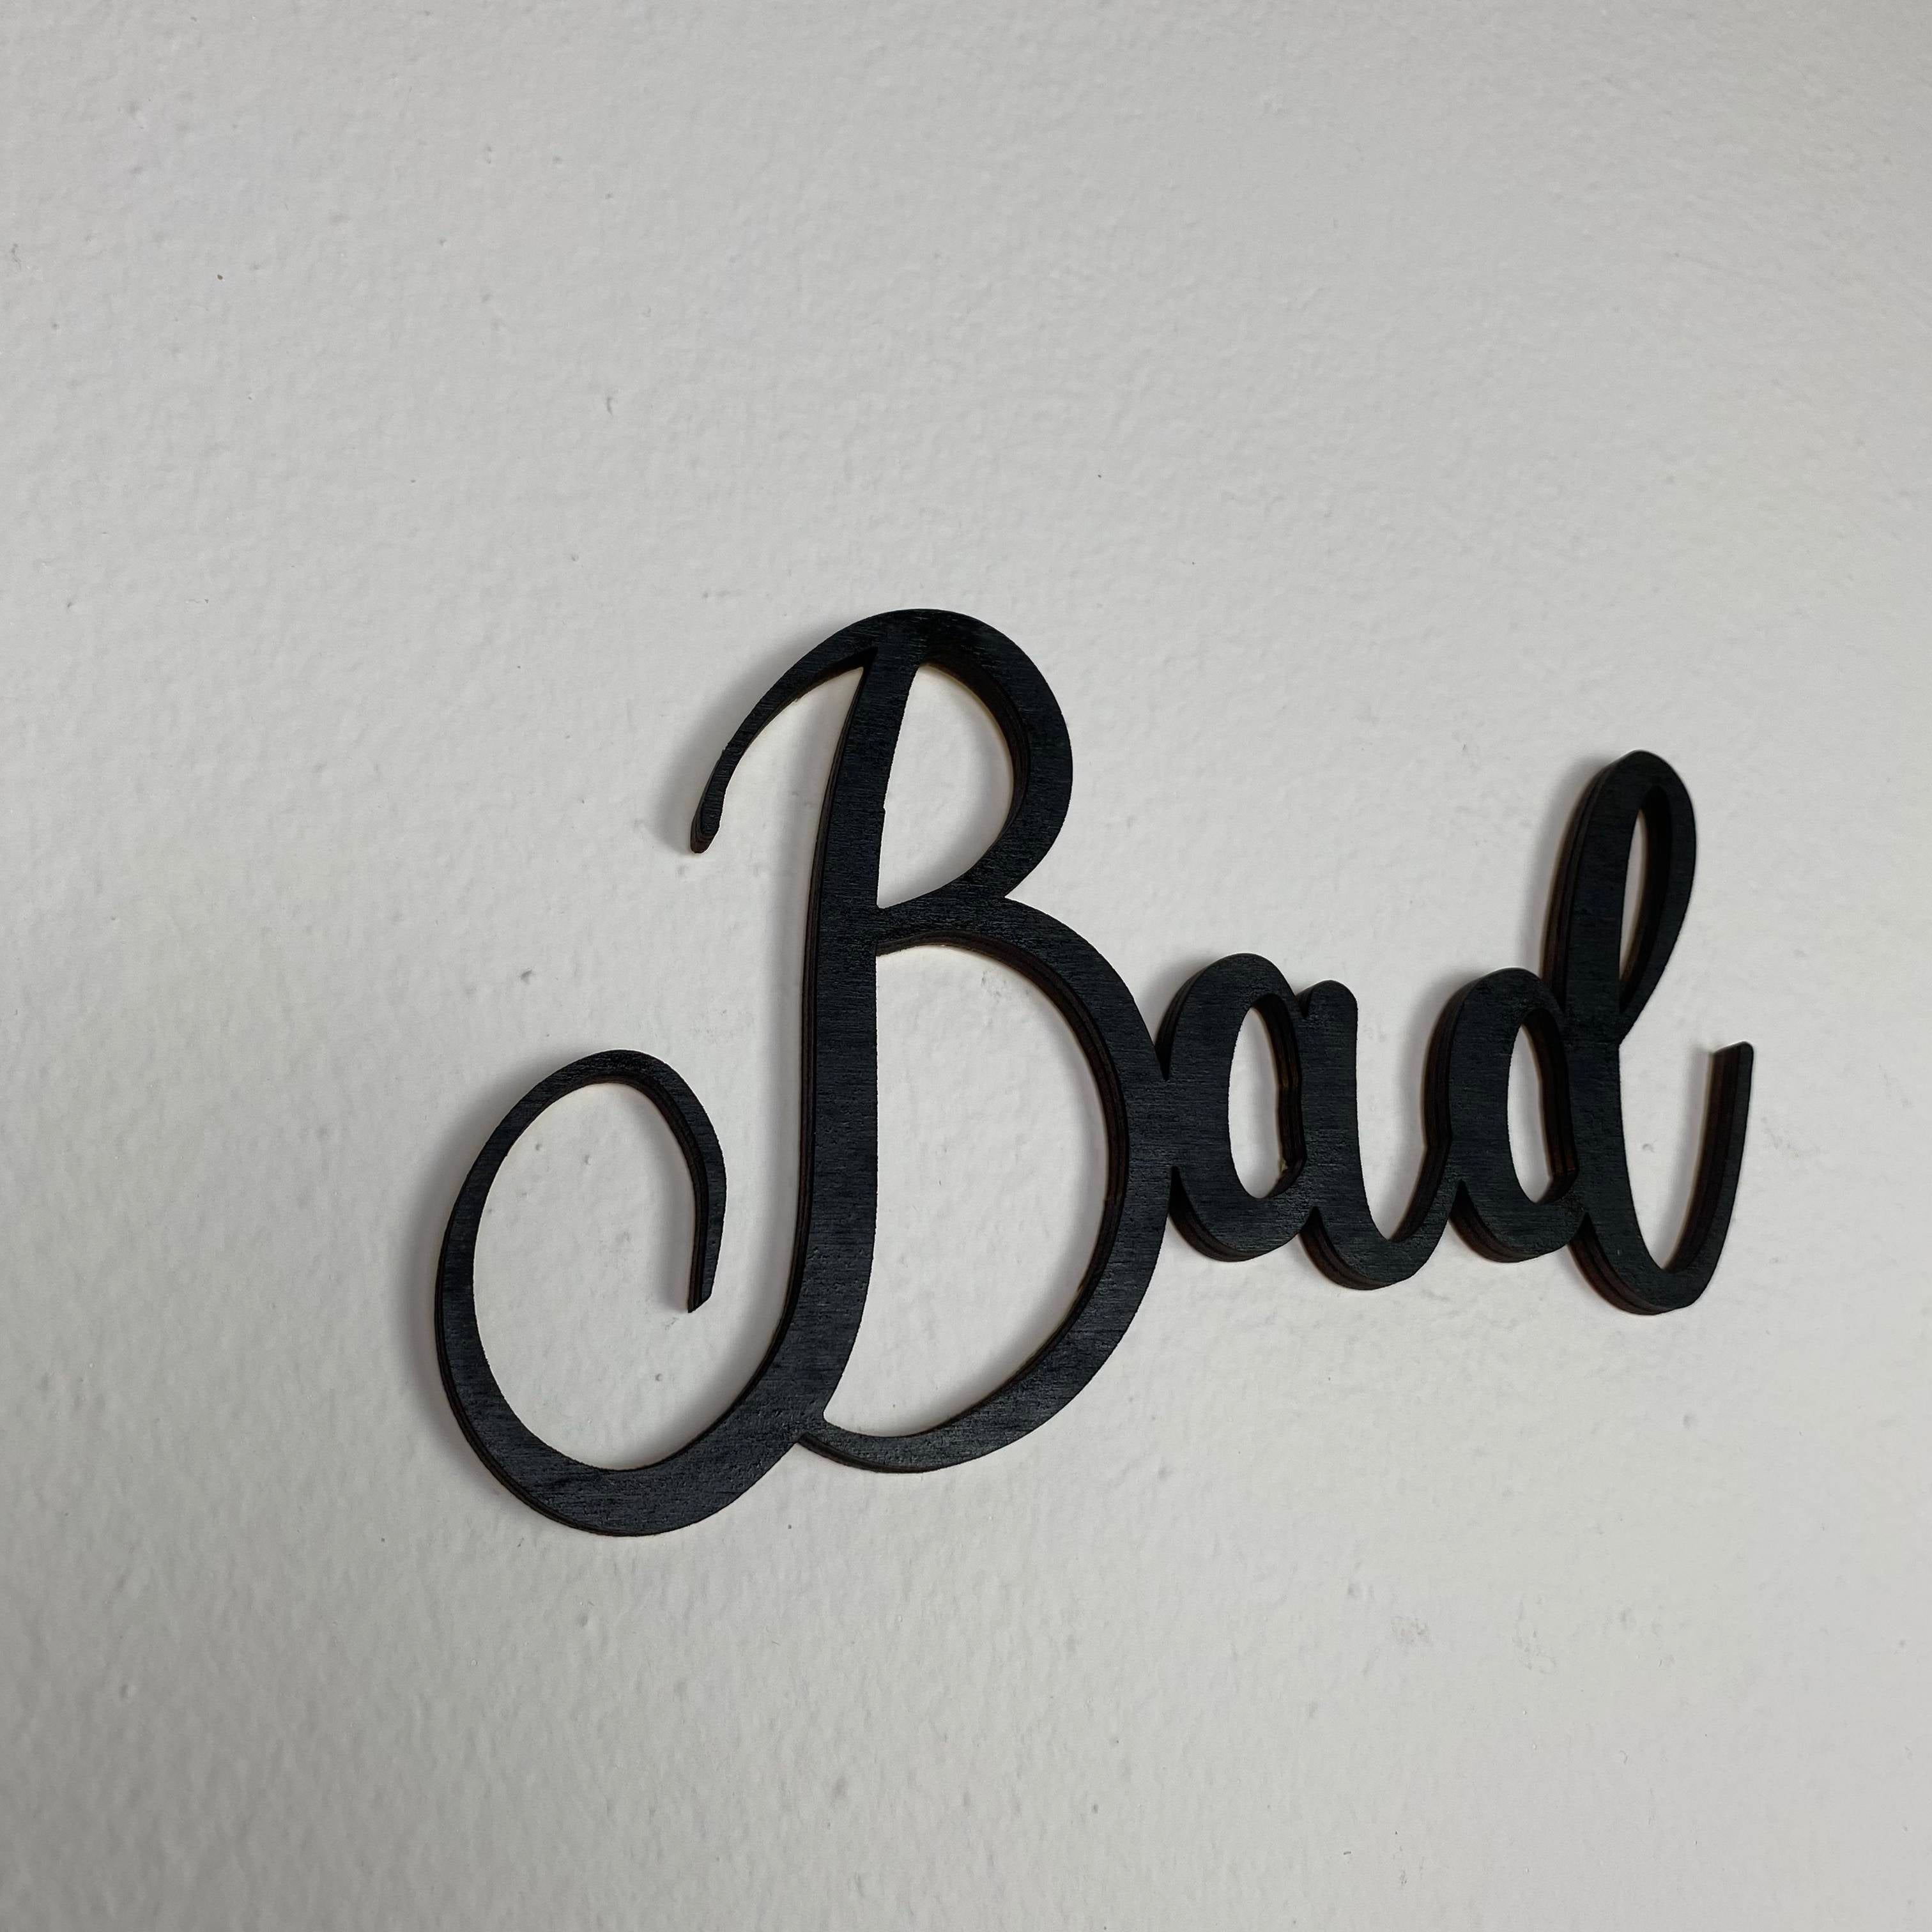 Bad Türschild | Holz Schriftzug | Toilettenschild  | Wandtattoo Holz | Wanddeko| 3D Schriftzug